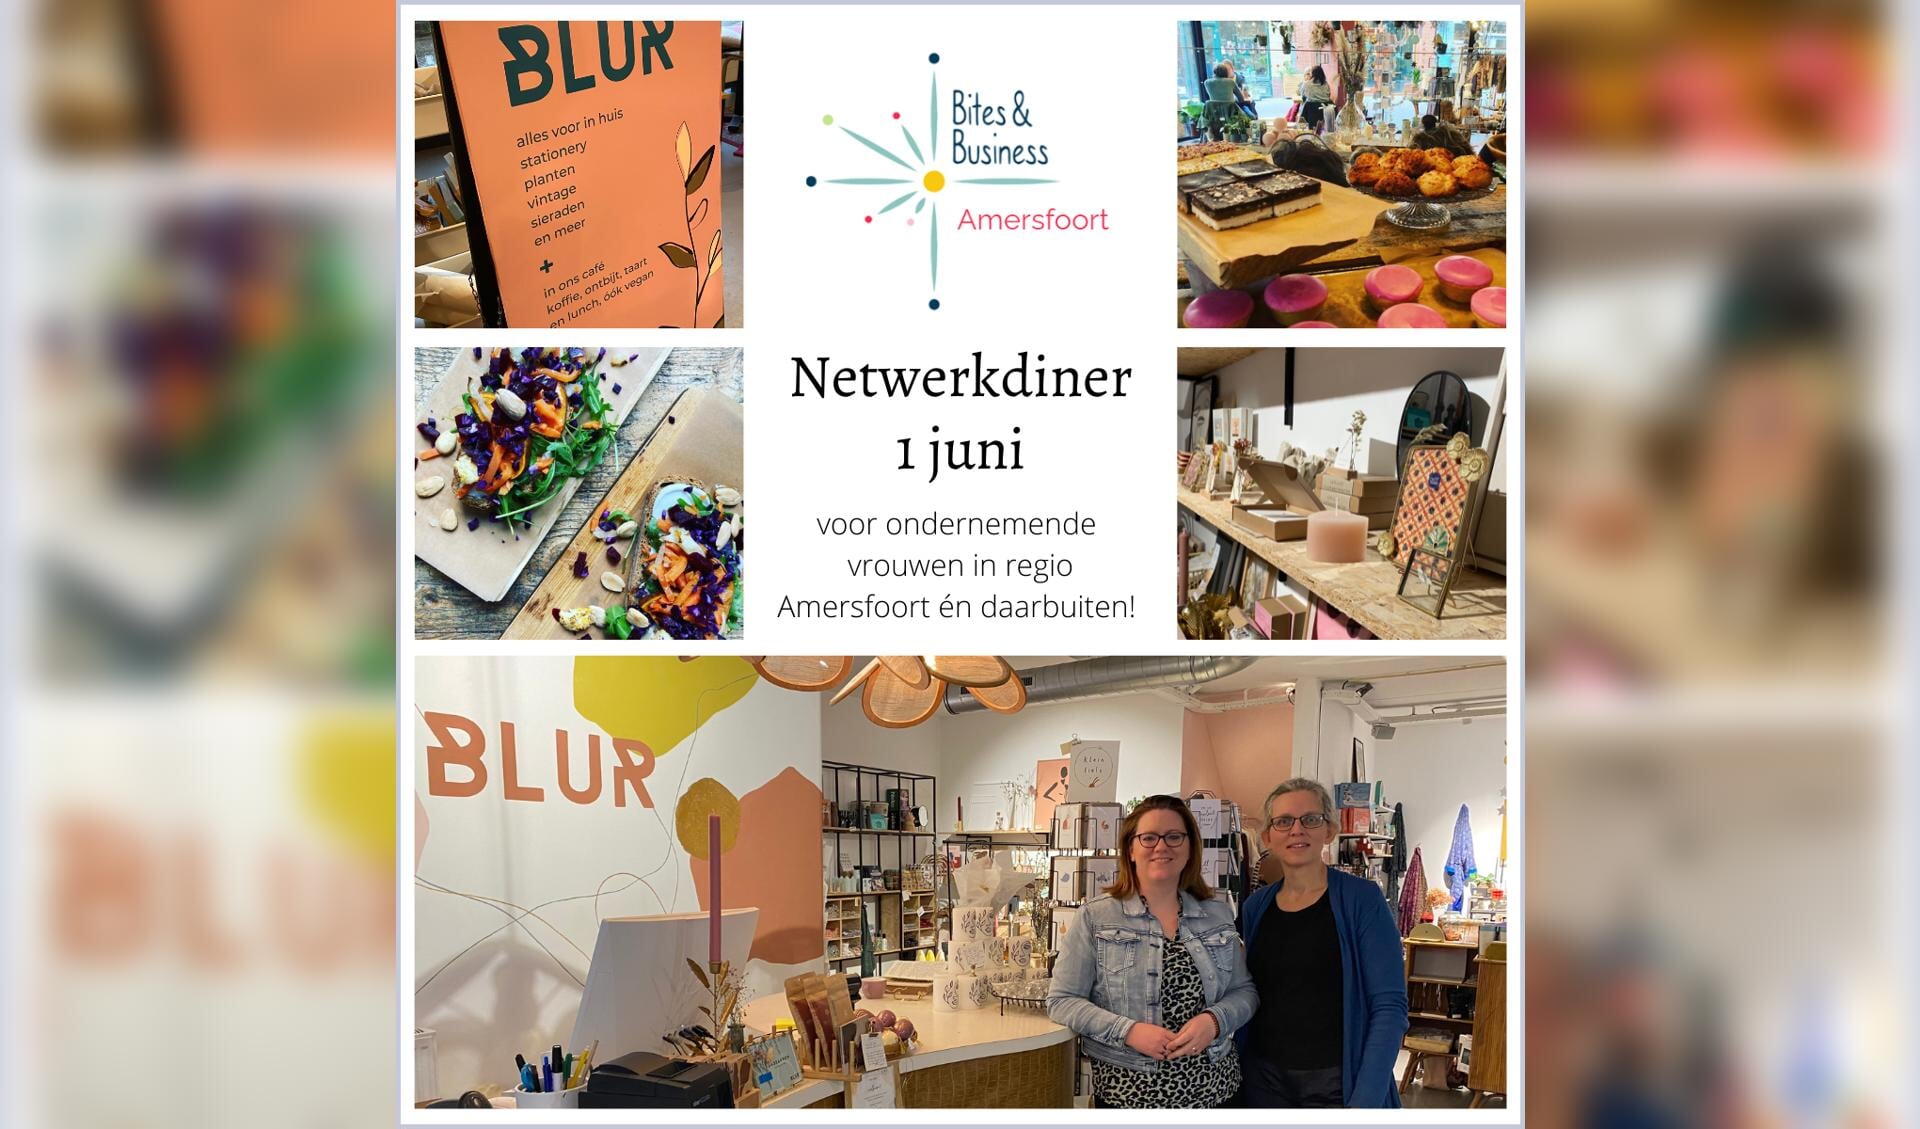 Conceptstore Blur, samen met Bites & Business Amersfoort coördinatoren Marianne van Lubek en Vera de Haan